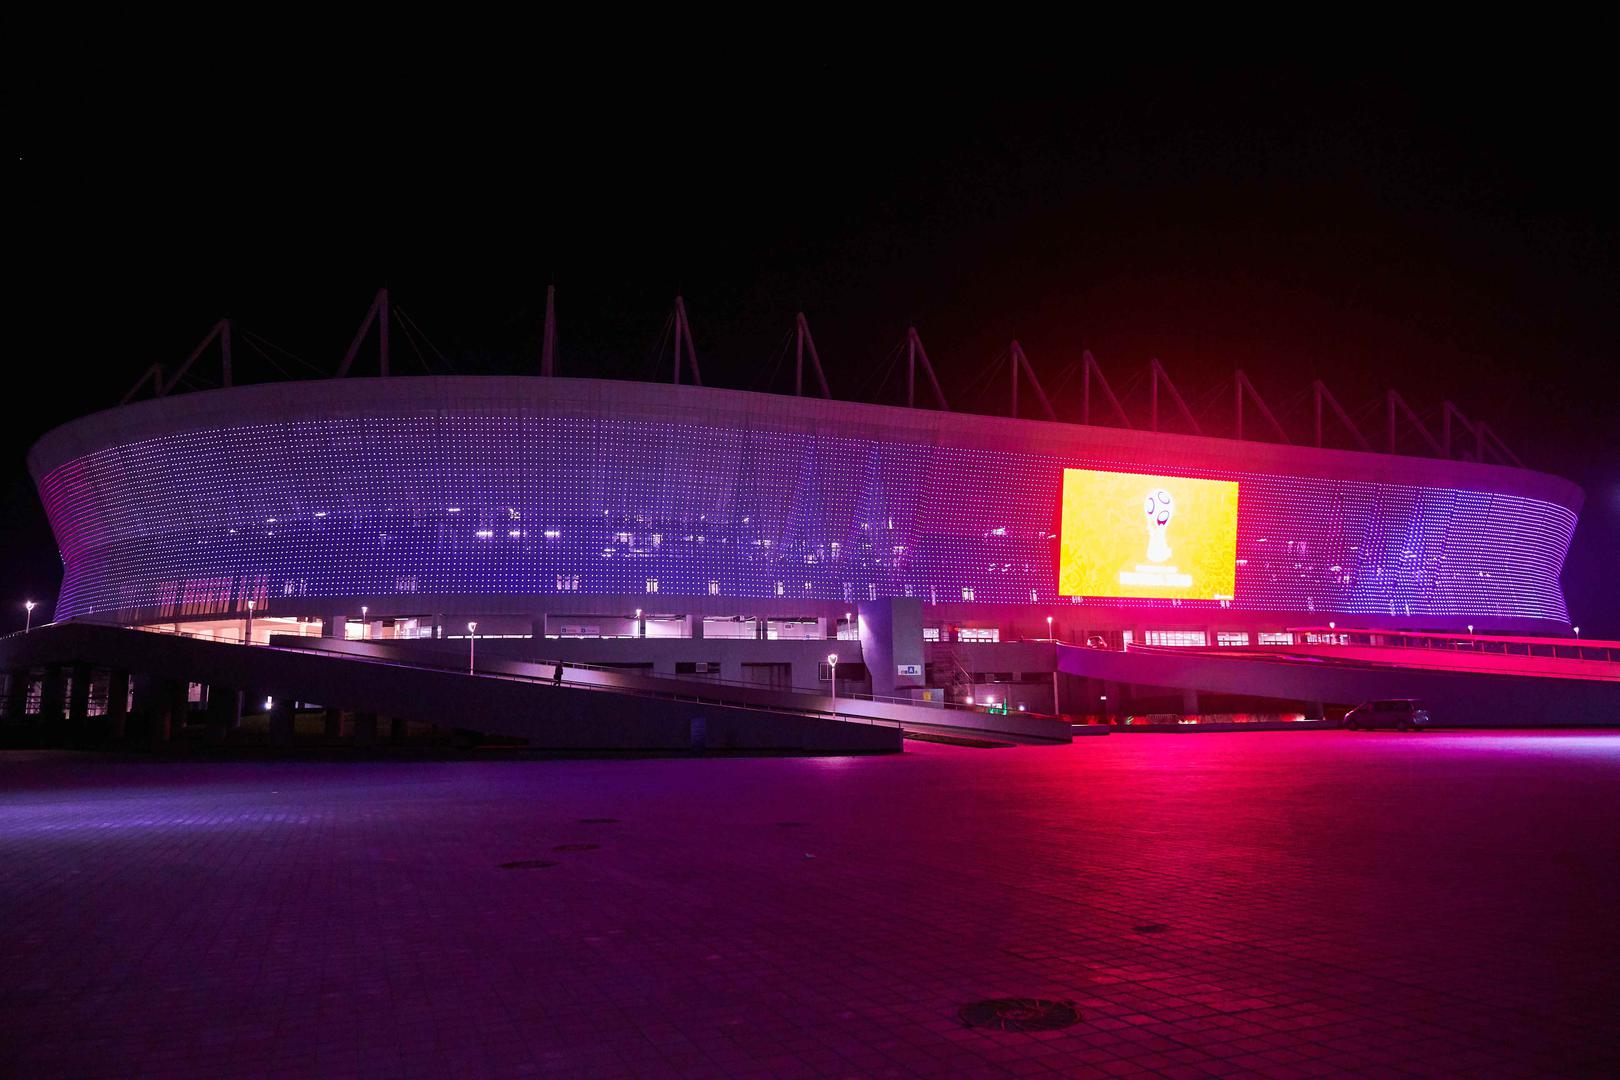 Stadion je to koji je izgrađen za potrebe Svjetskog prvenstva, kapaciteta 45.000 mjesta.